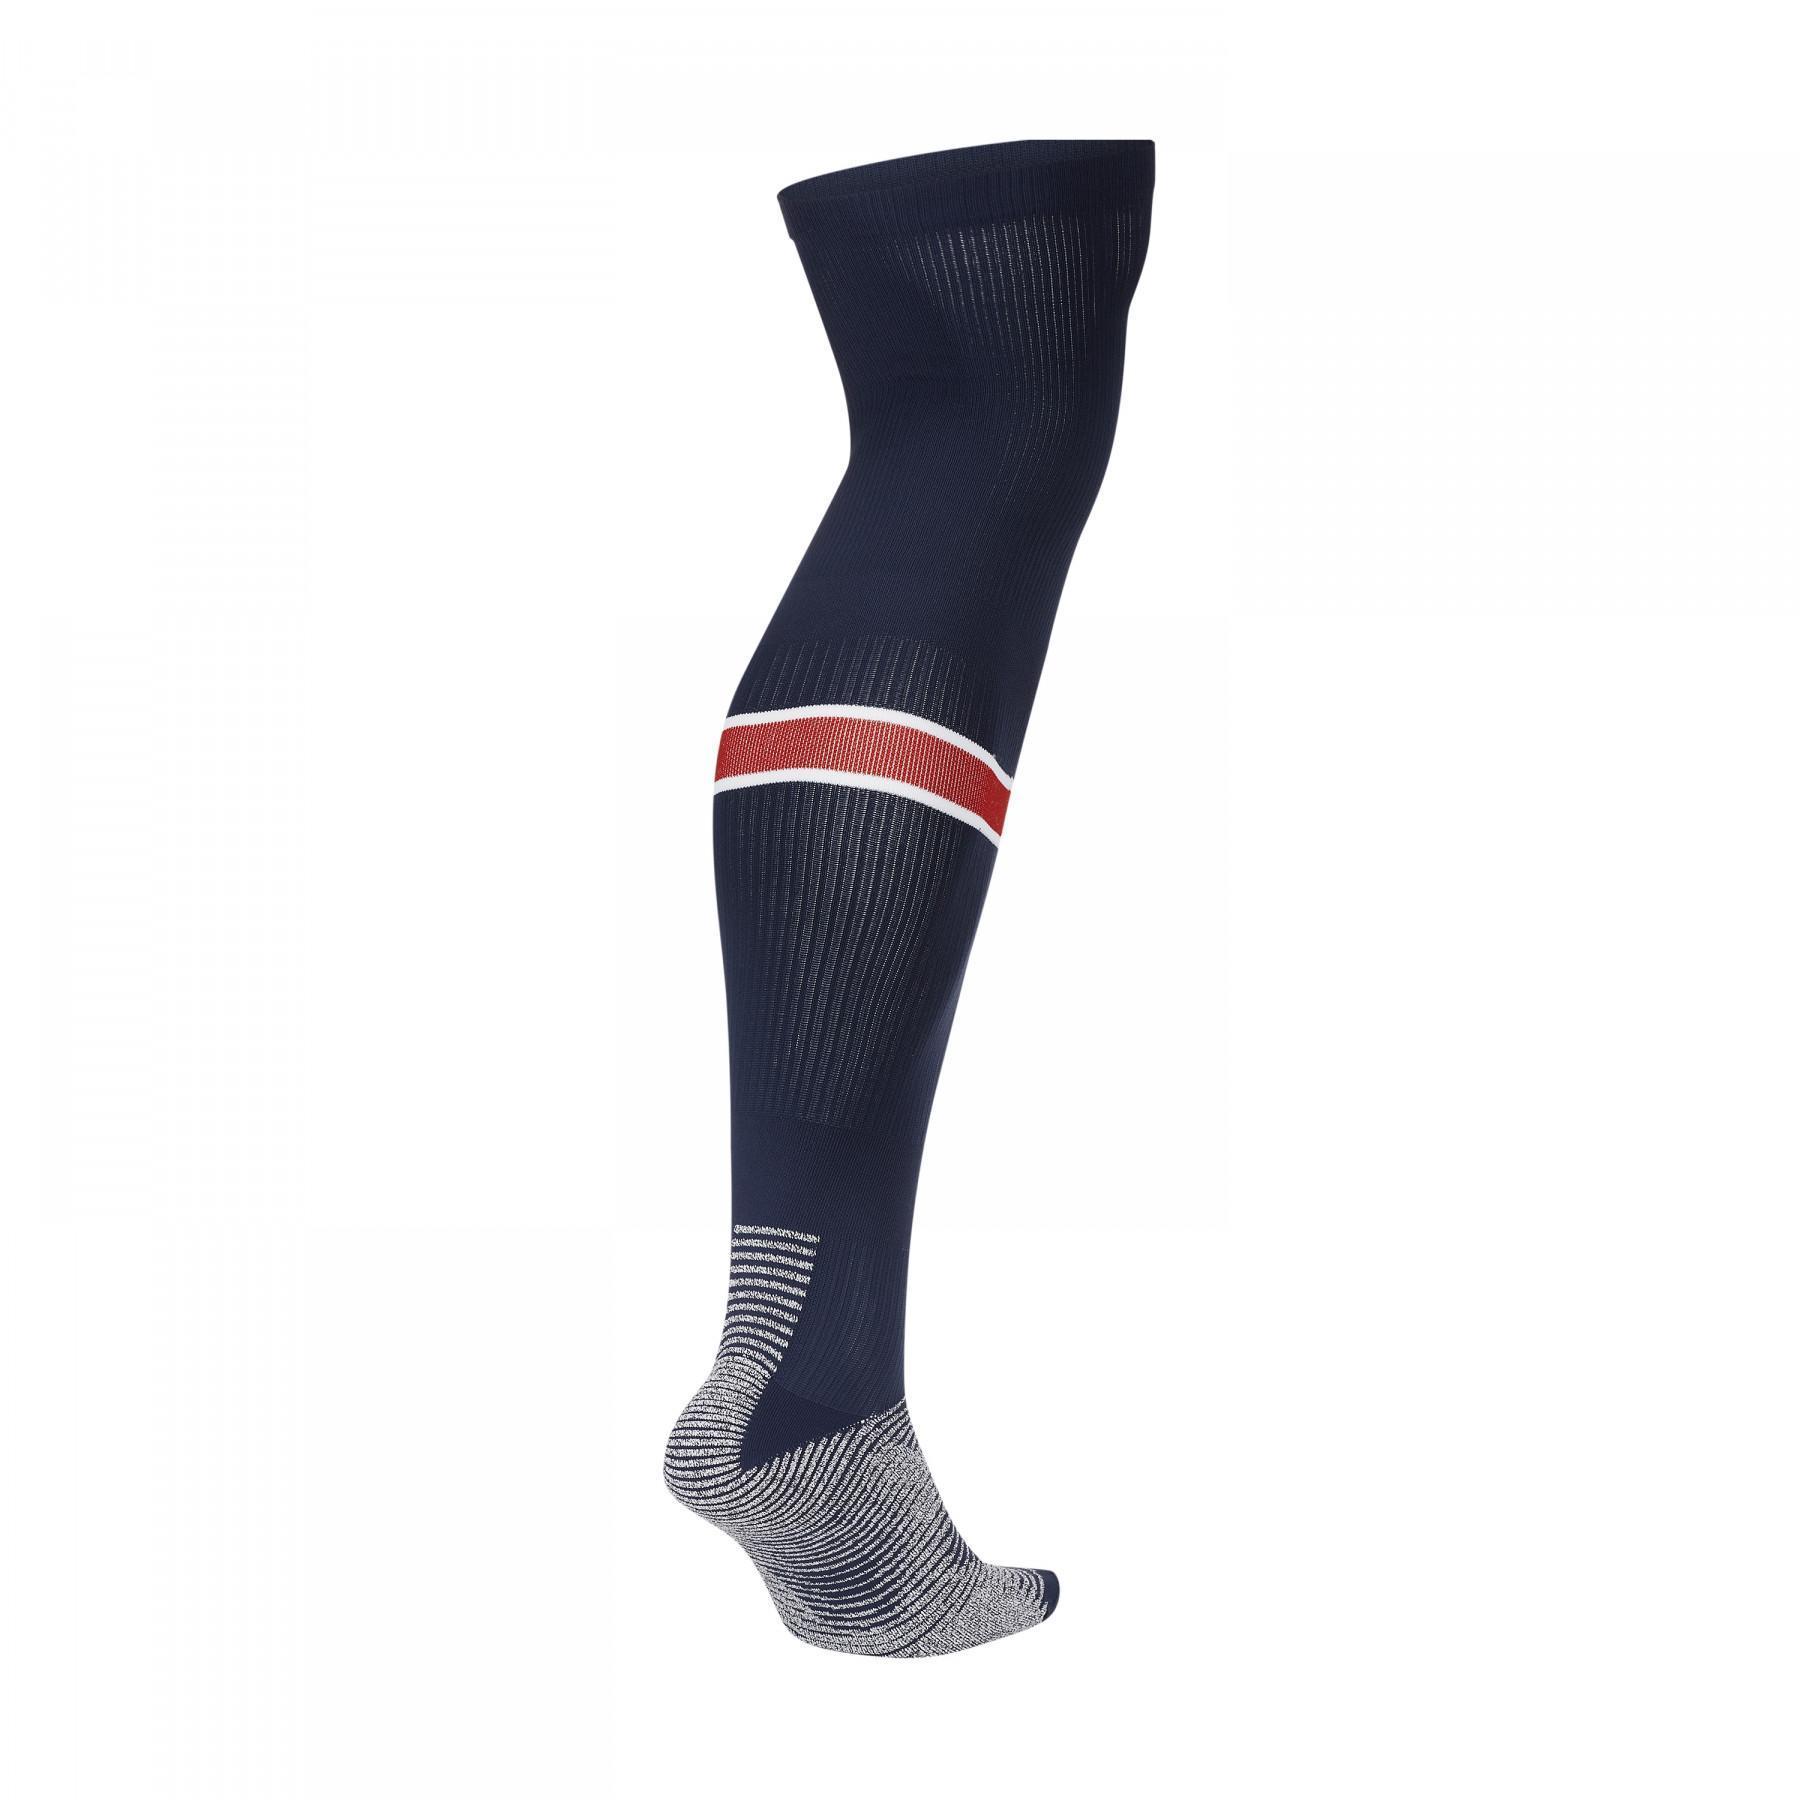 Home socks PSG 2020/21